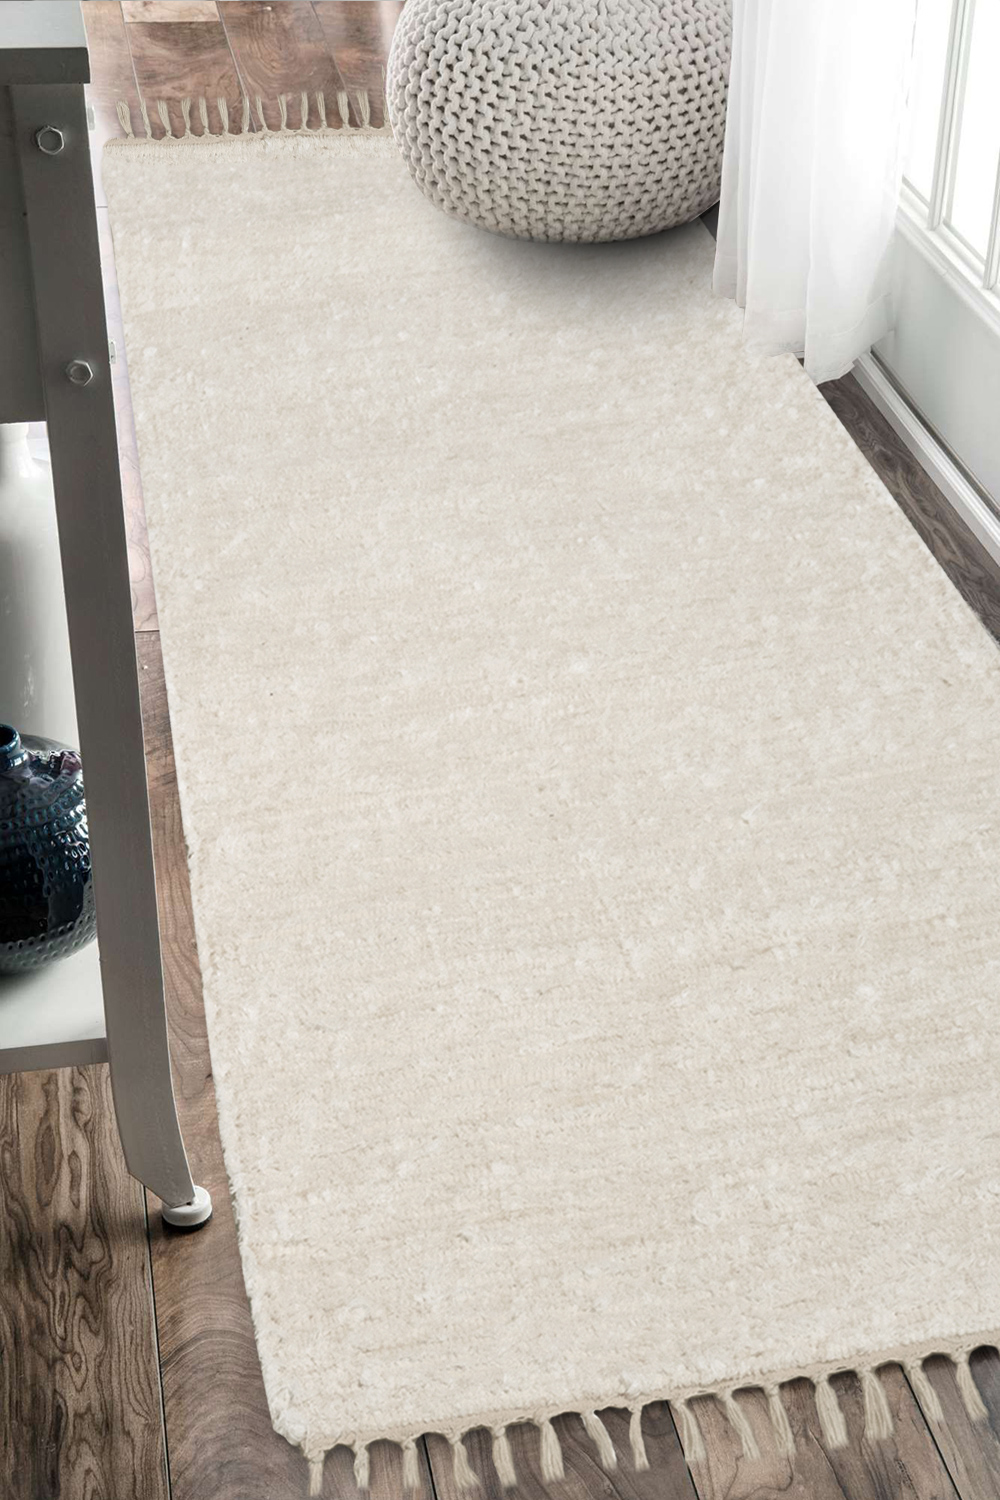 Ručne tkaný koberec - Béžový 50x120 cm